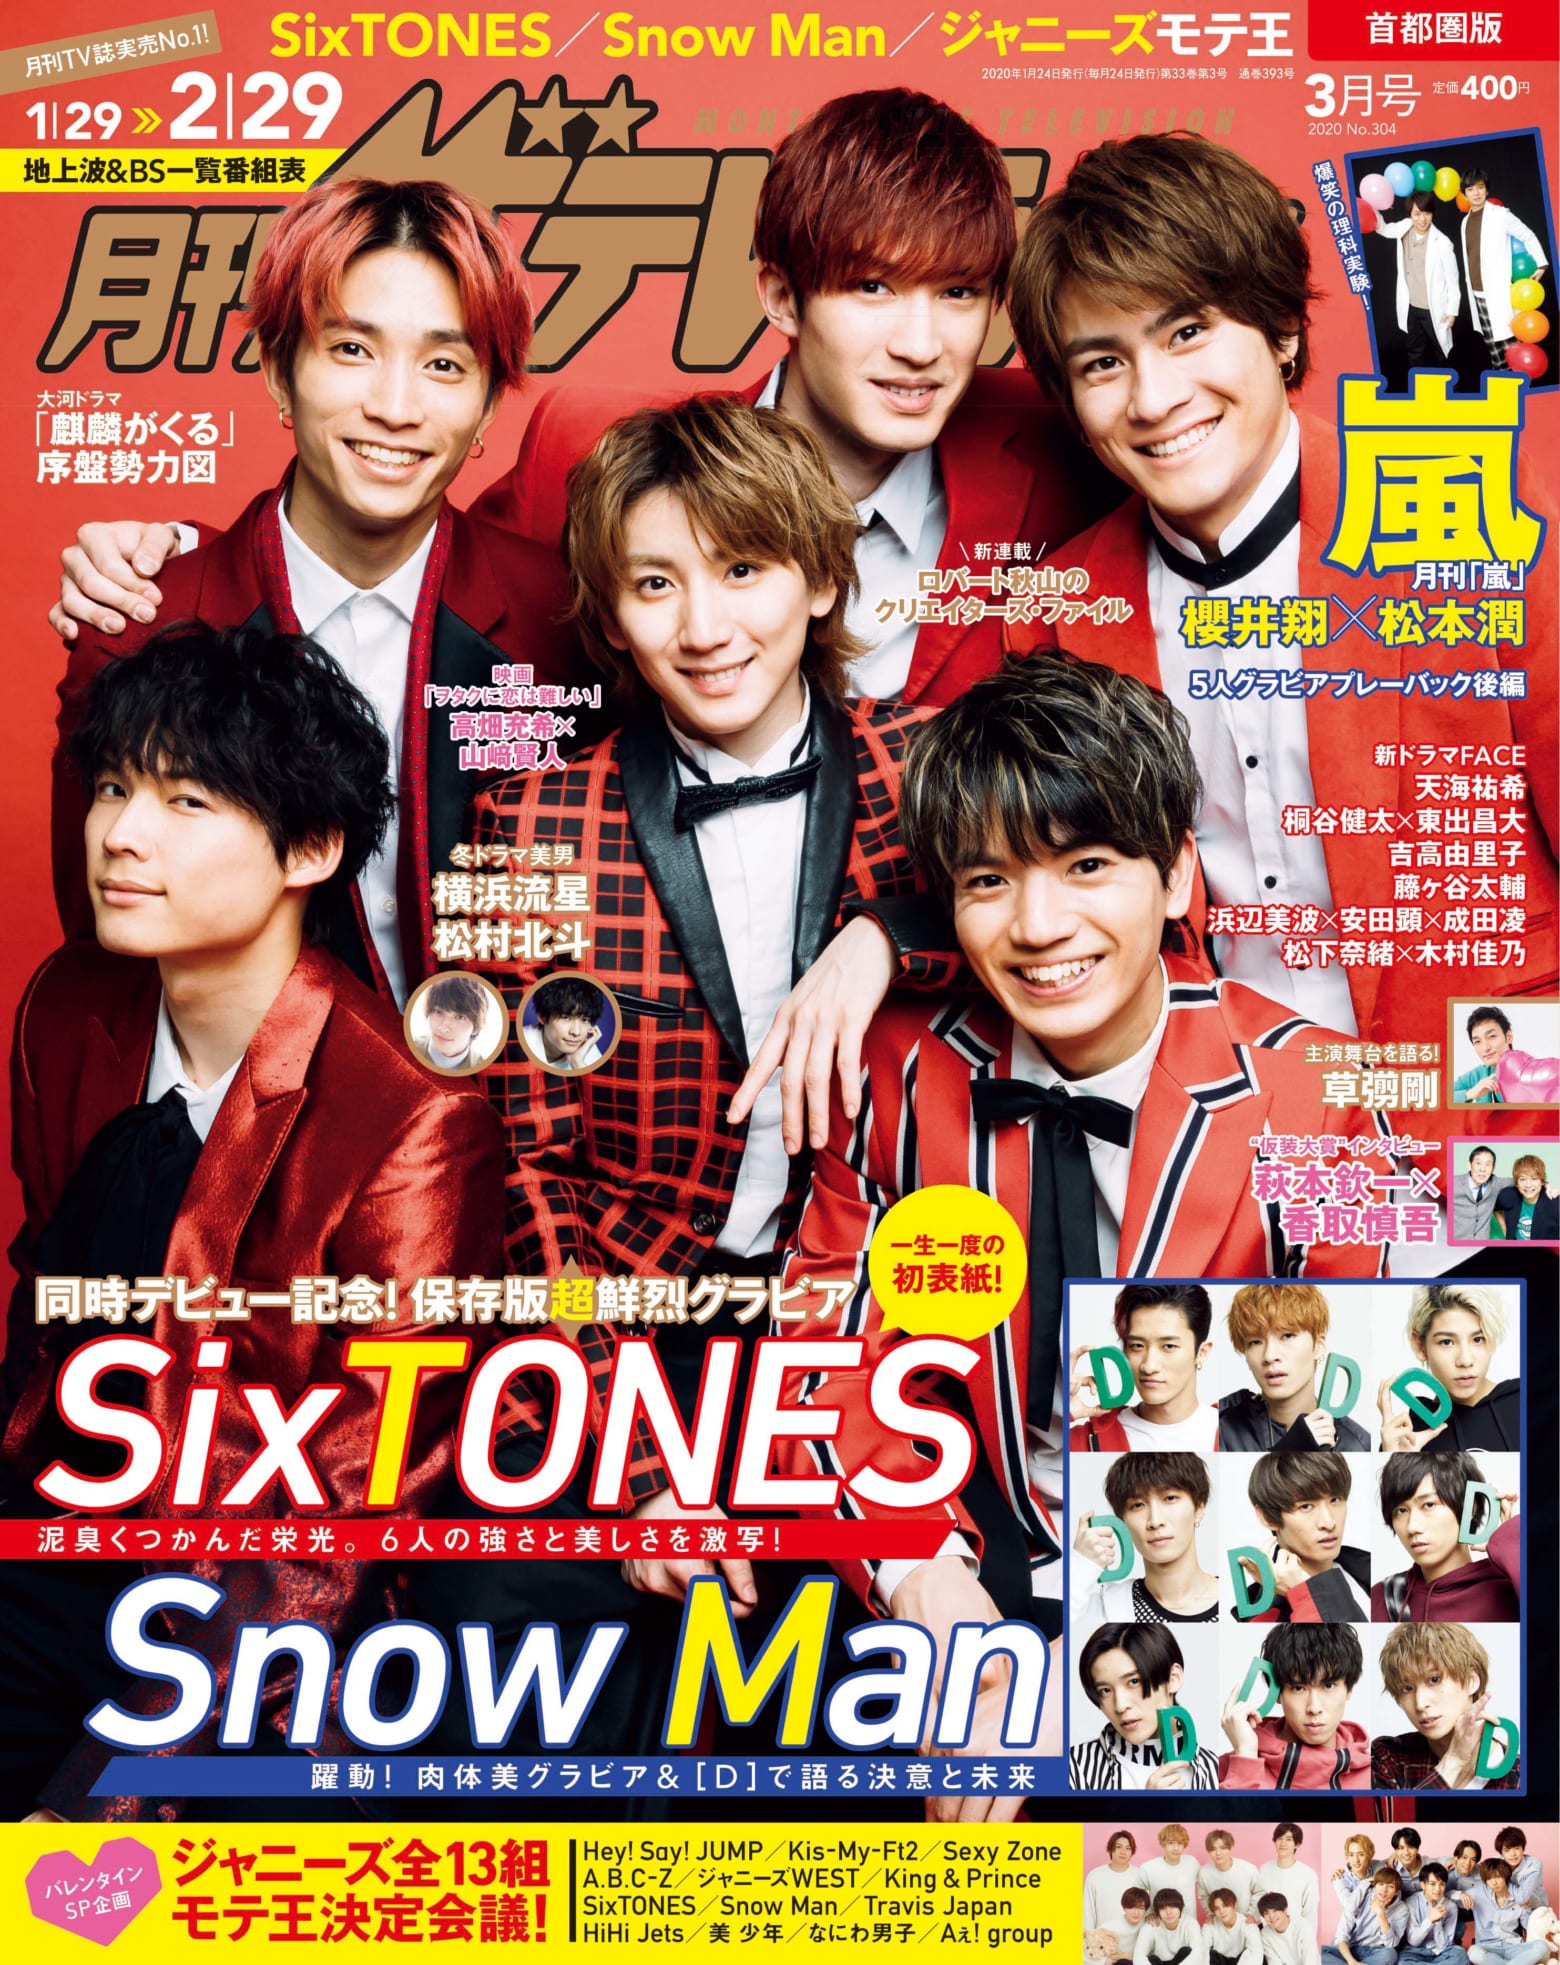 Sixtones 月刊ザテレビジョン 3月号表紙に初登場 Snow Manと永久保存版wグラビアも Musicman